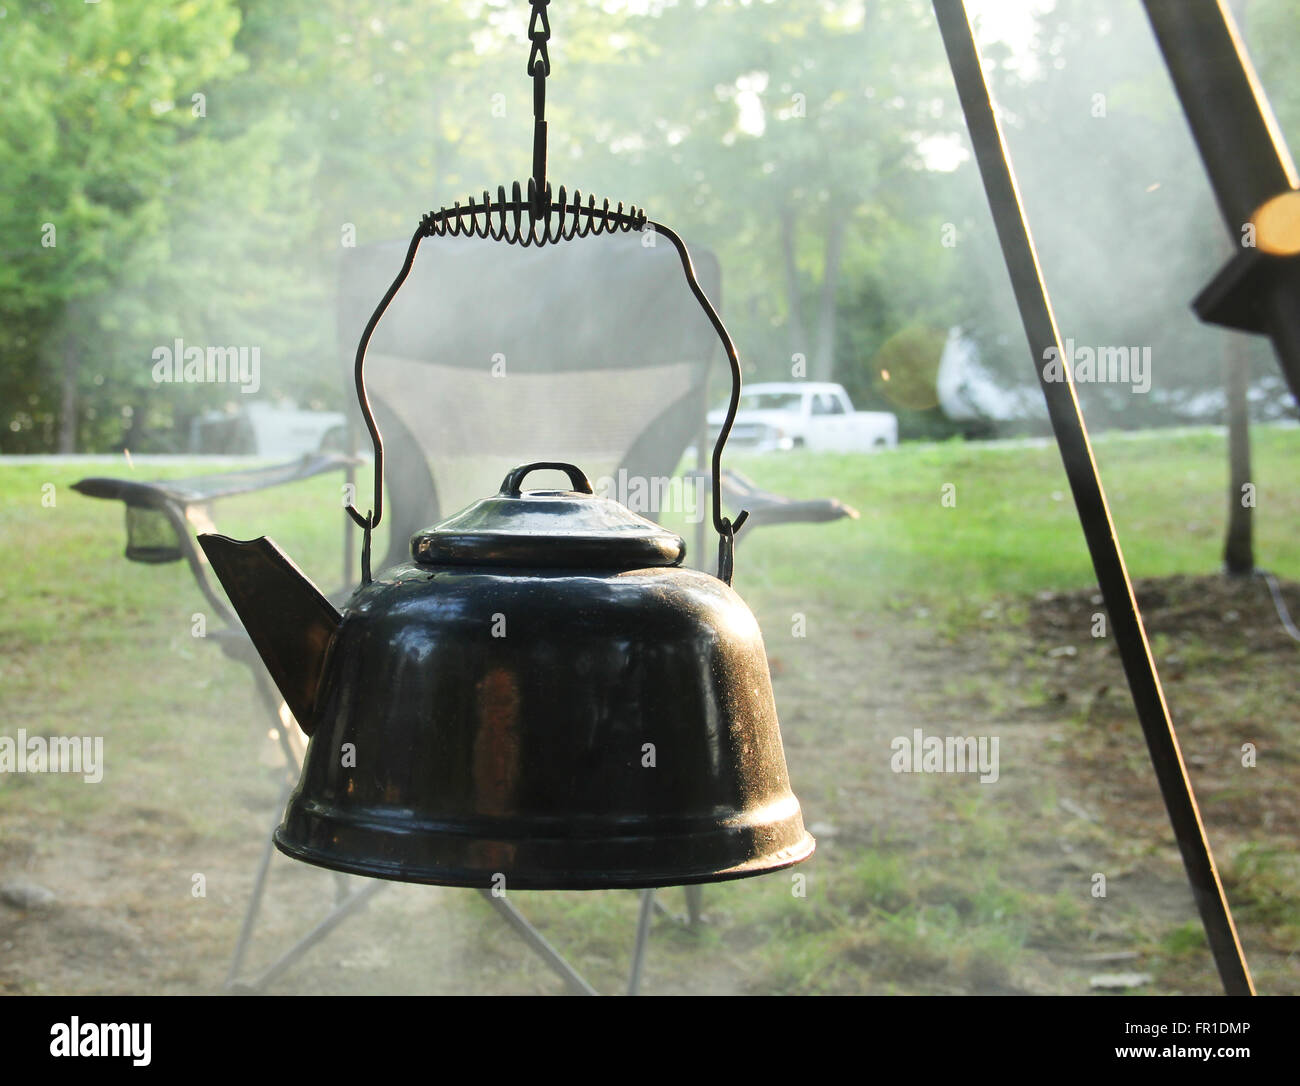 https://c8.alamy.com/comp/FR1DMP/teapot-heating-water-over-a-smoke-filled-campfire-FR1DMP.jpg